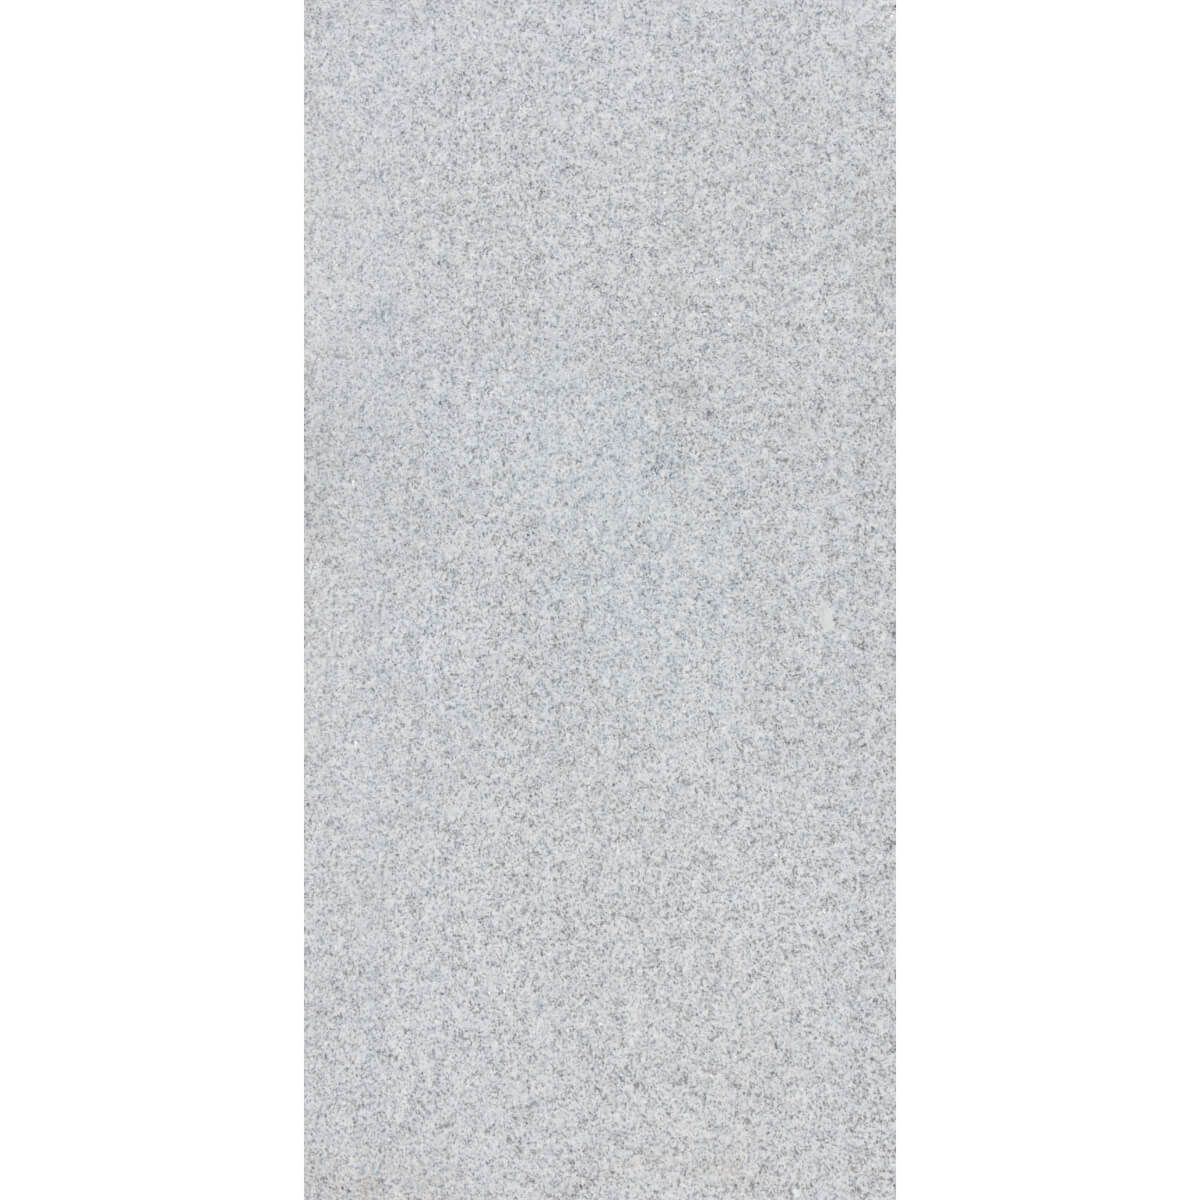 Płytki Granit G603 New Bianco Cristal płomieniowany 120x60x2 cm